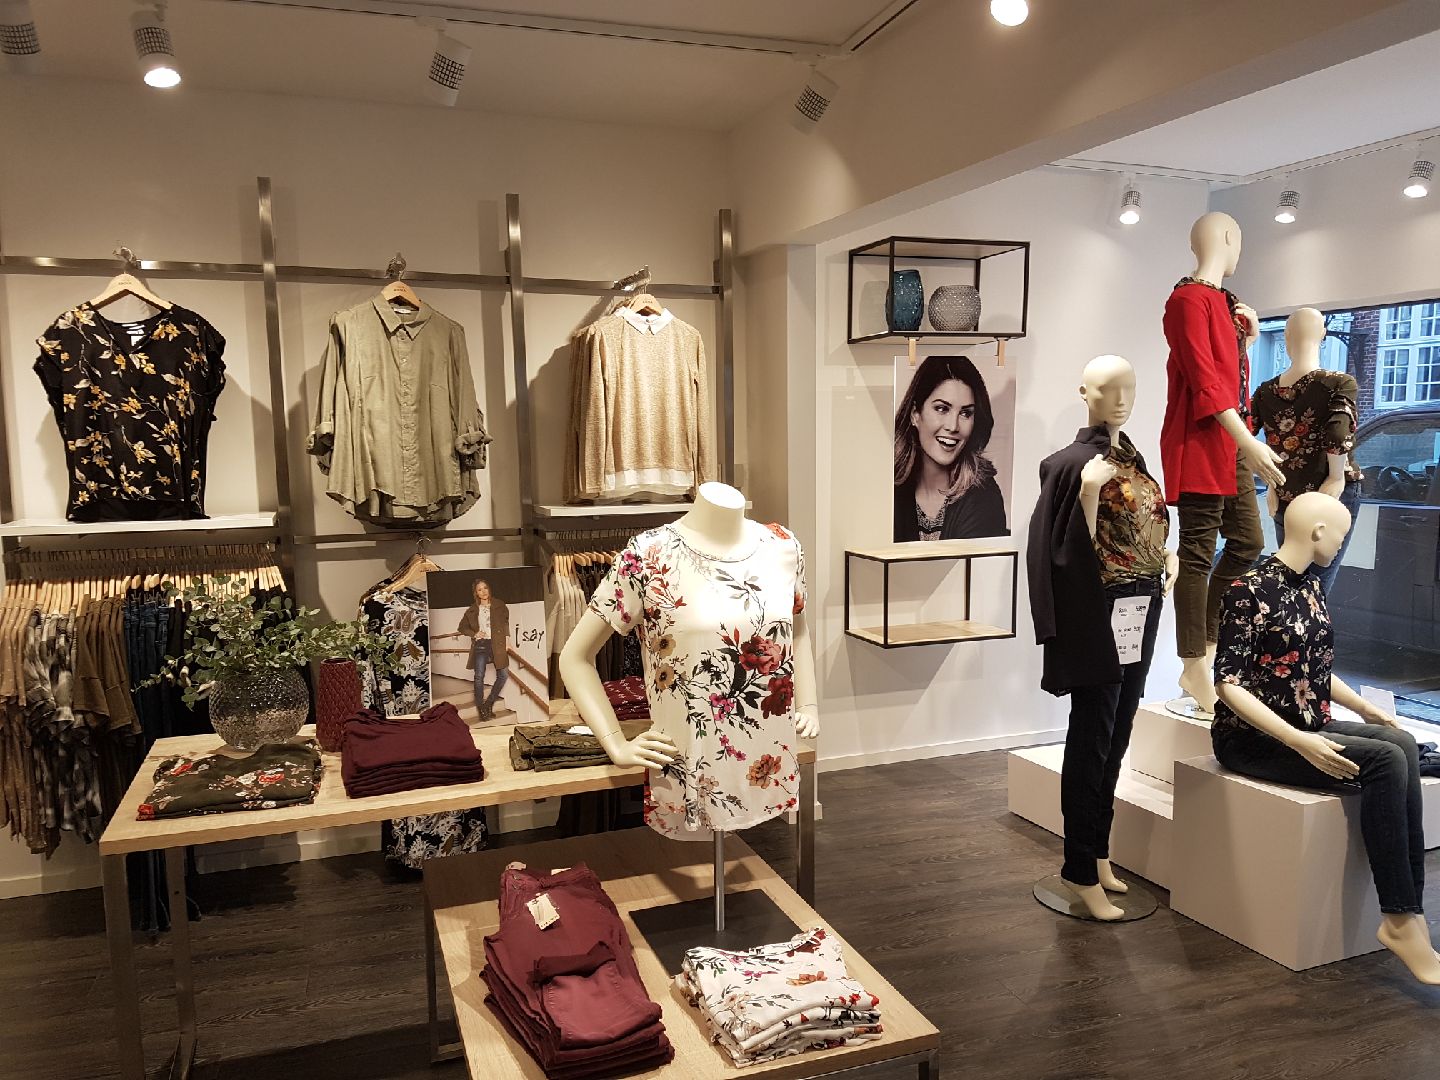 Modebutik med nyt design udtryk som skandinavisk i udtrykket. Butiksindretning